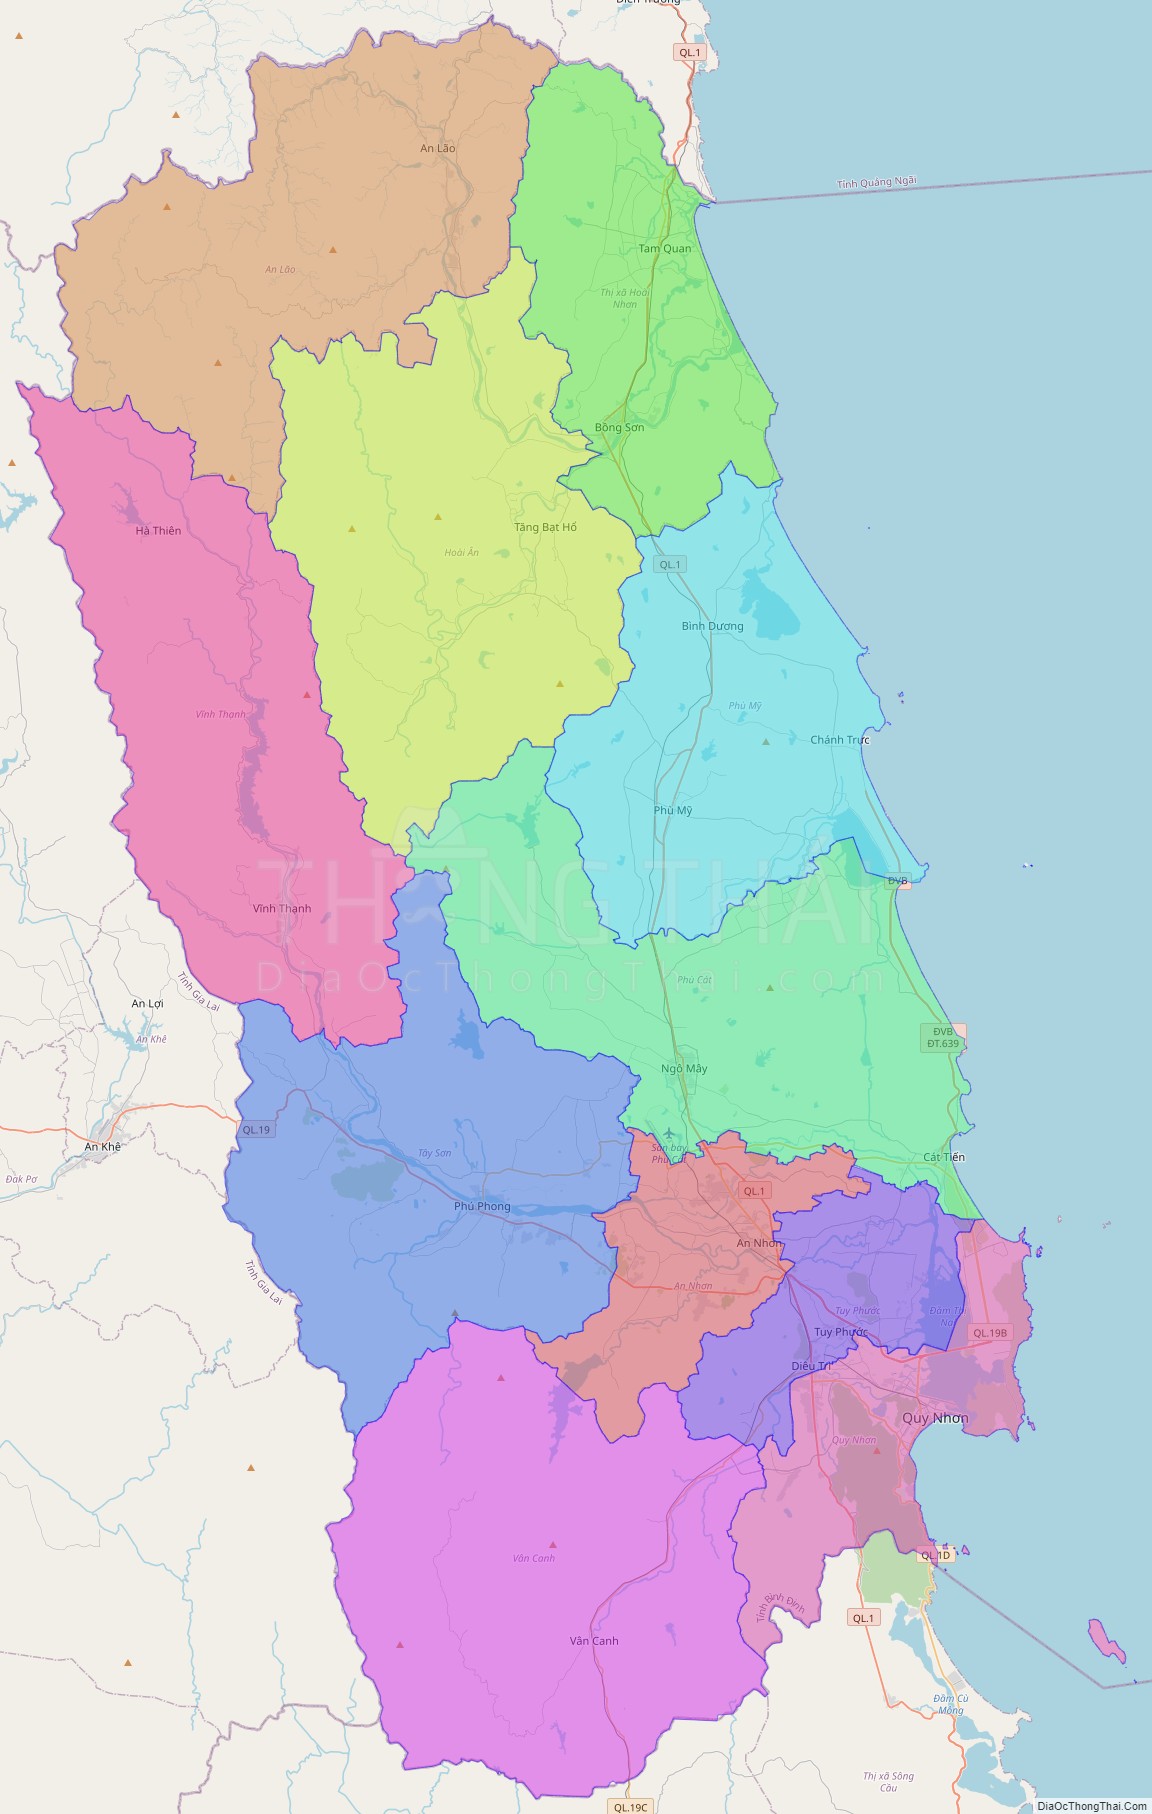 Bản đồ hành chính tỉnh Bình Định không kèm nhãn